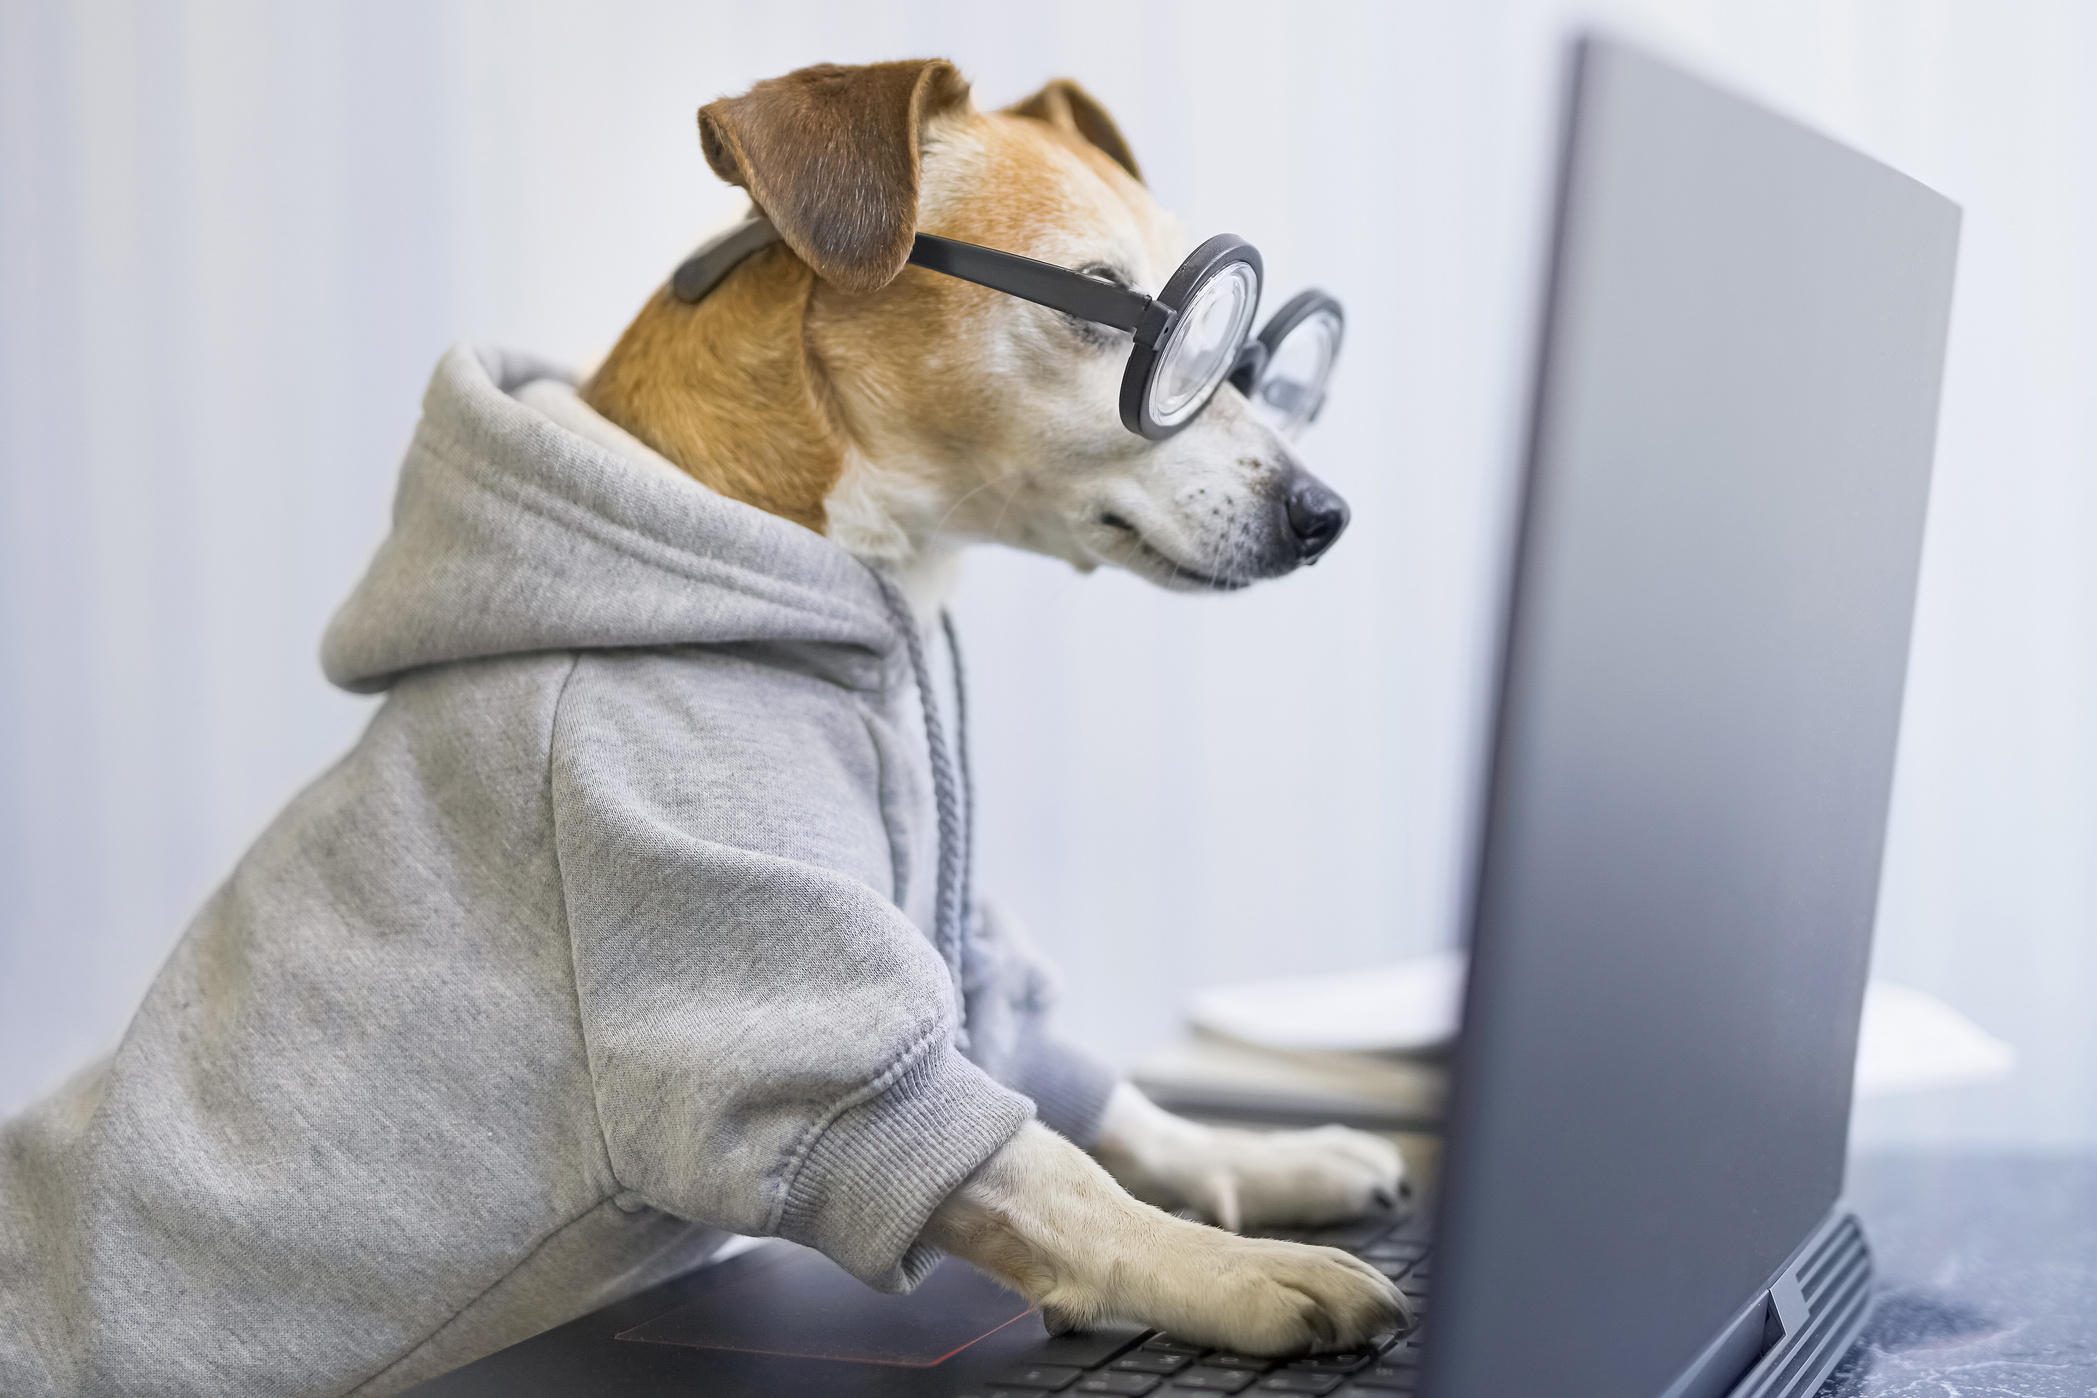 Smart working dog using computer typing on laptop keyboard.